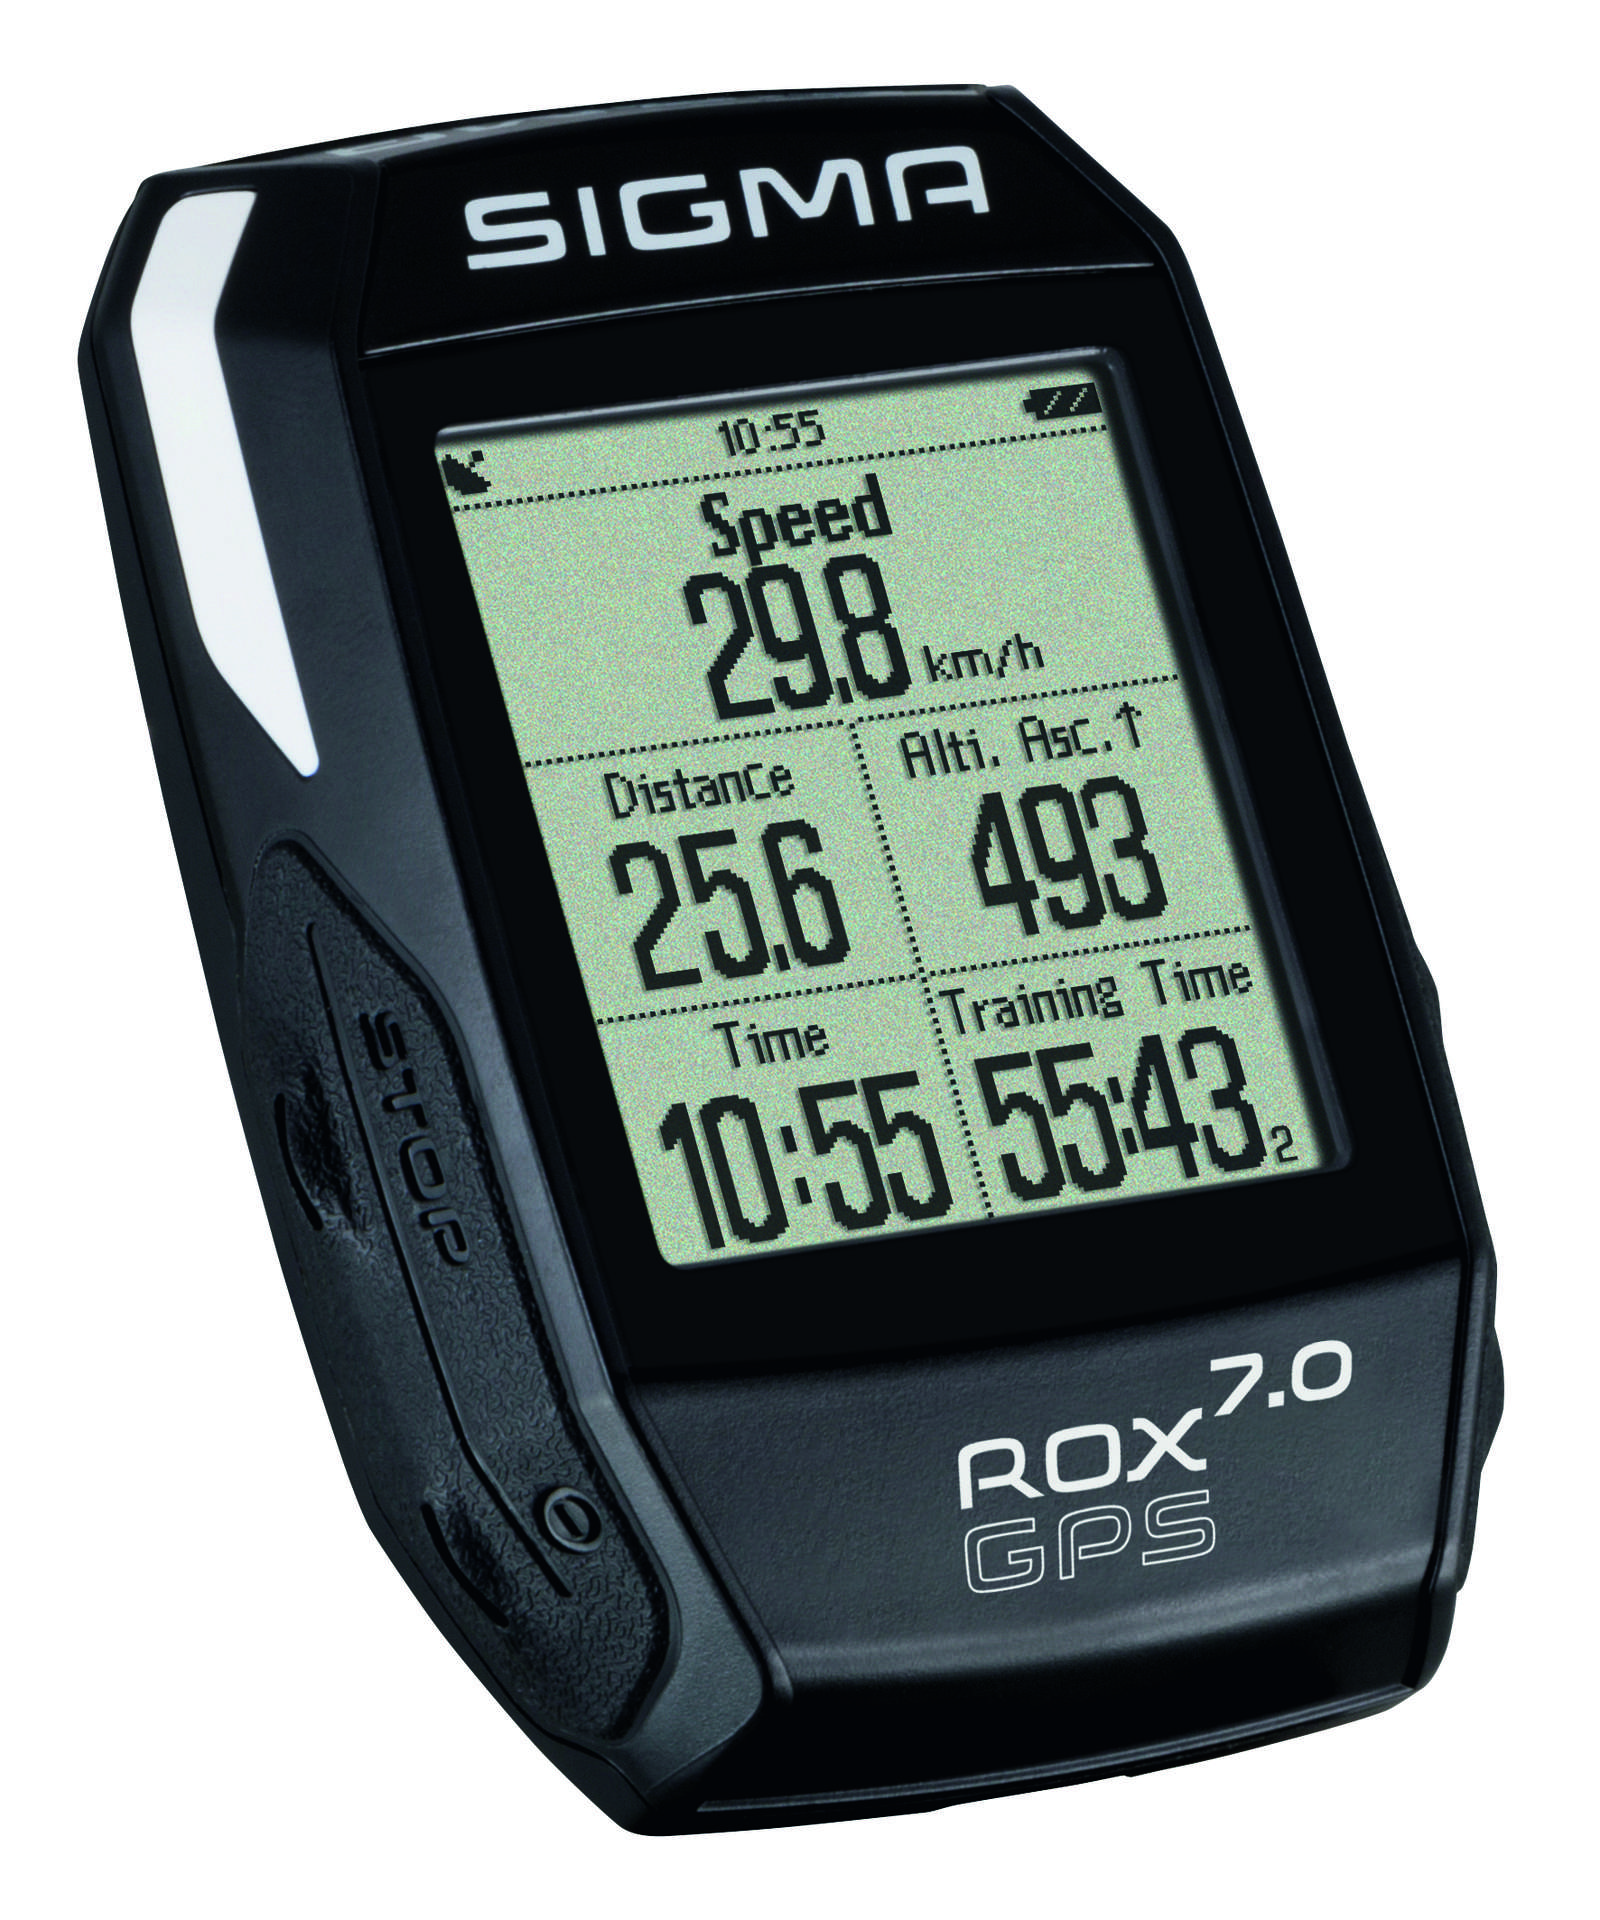 Sigma Sport ROX GPS 7.0 Fietscomputer Zwart koop bij Futurumshop.nl